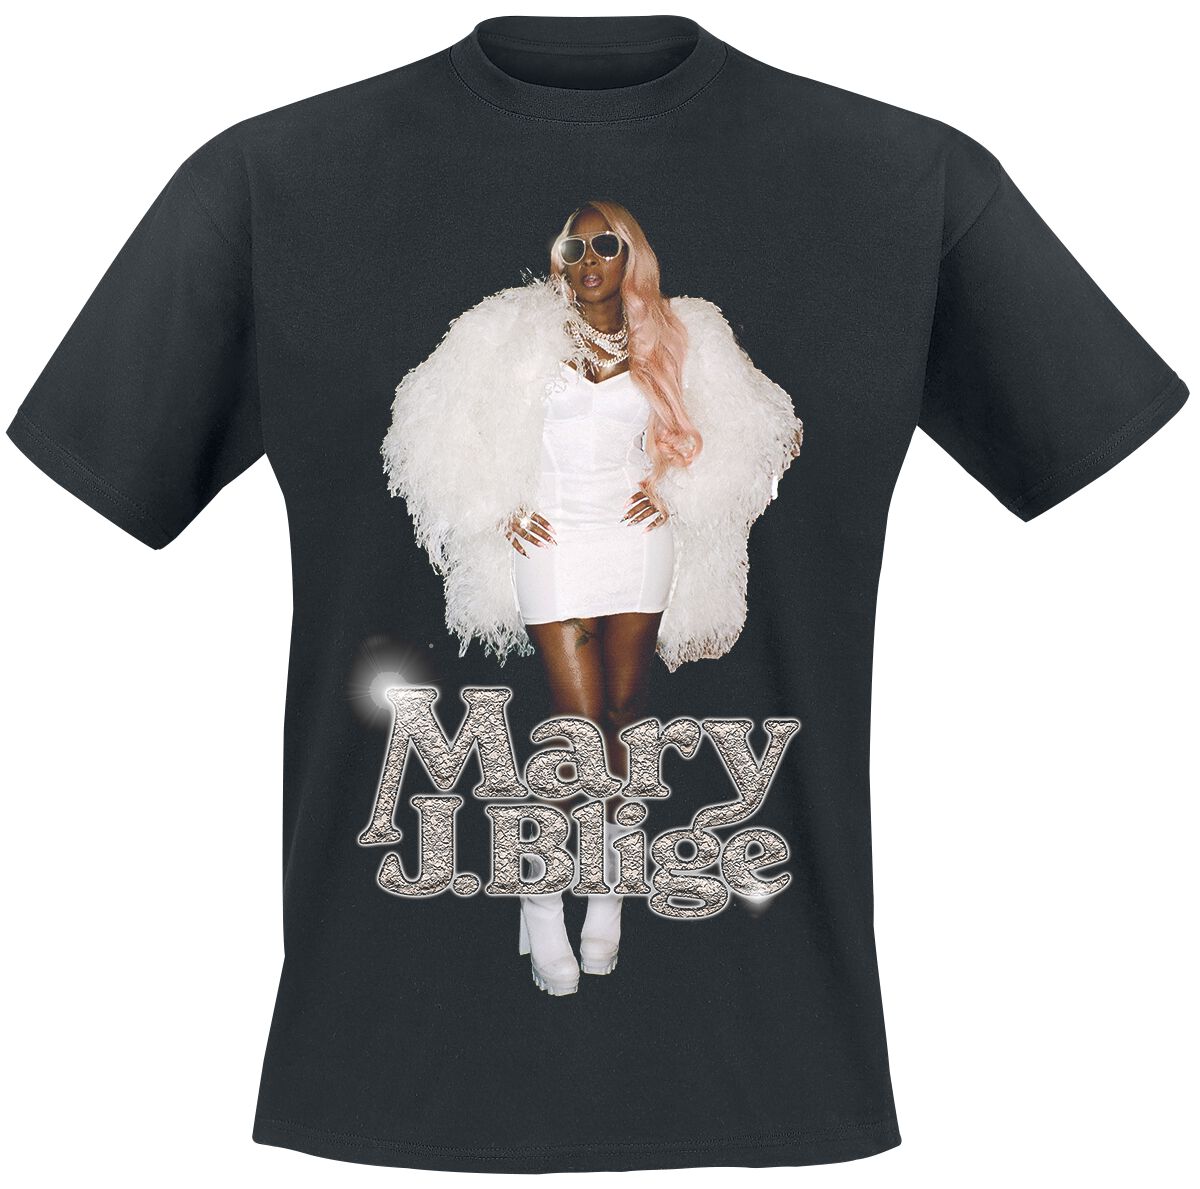 Mary J. Blige T-Shirt - Photo Glossy - S bis 3XL - für Männer - Größe M - schwarz  - Lizenziertes Merchandise!